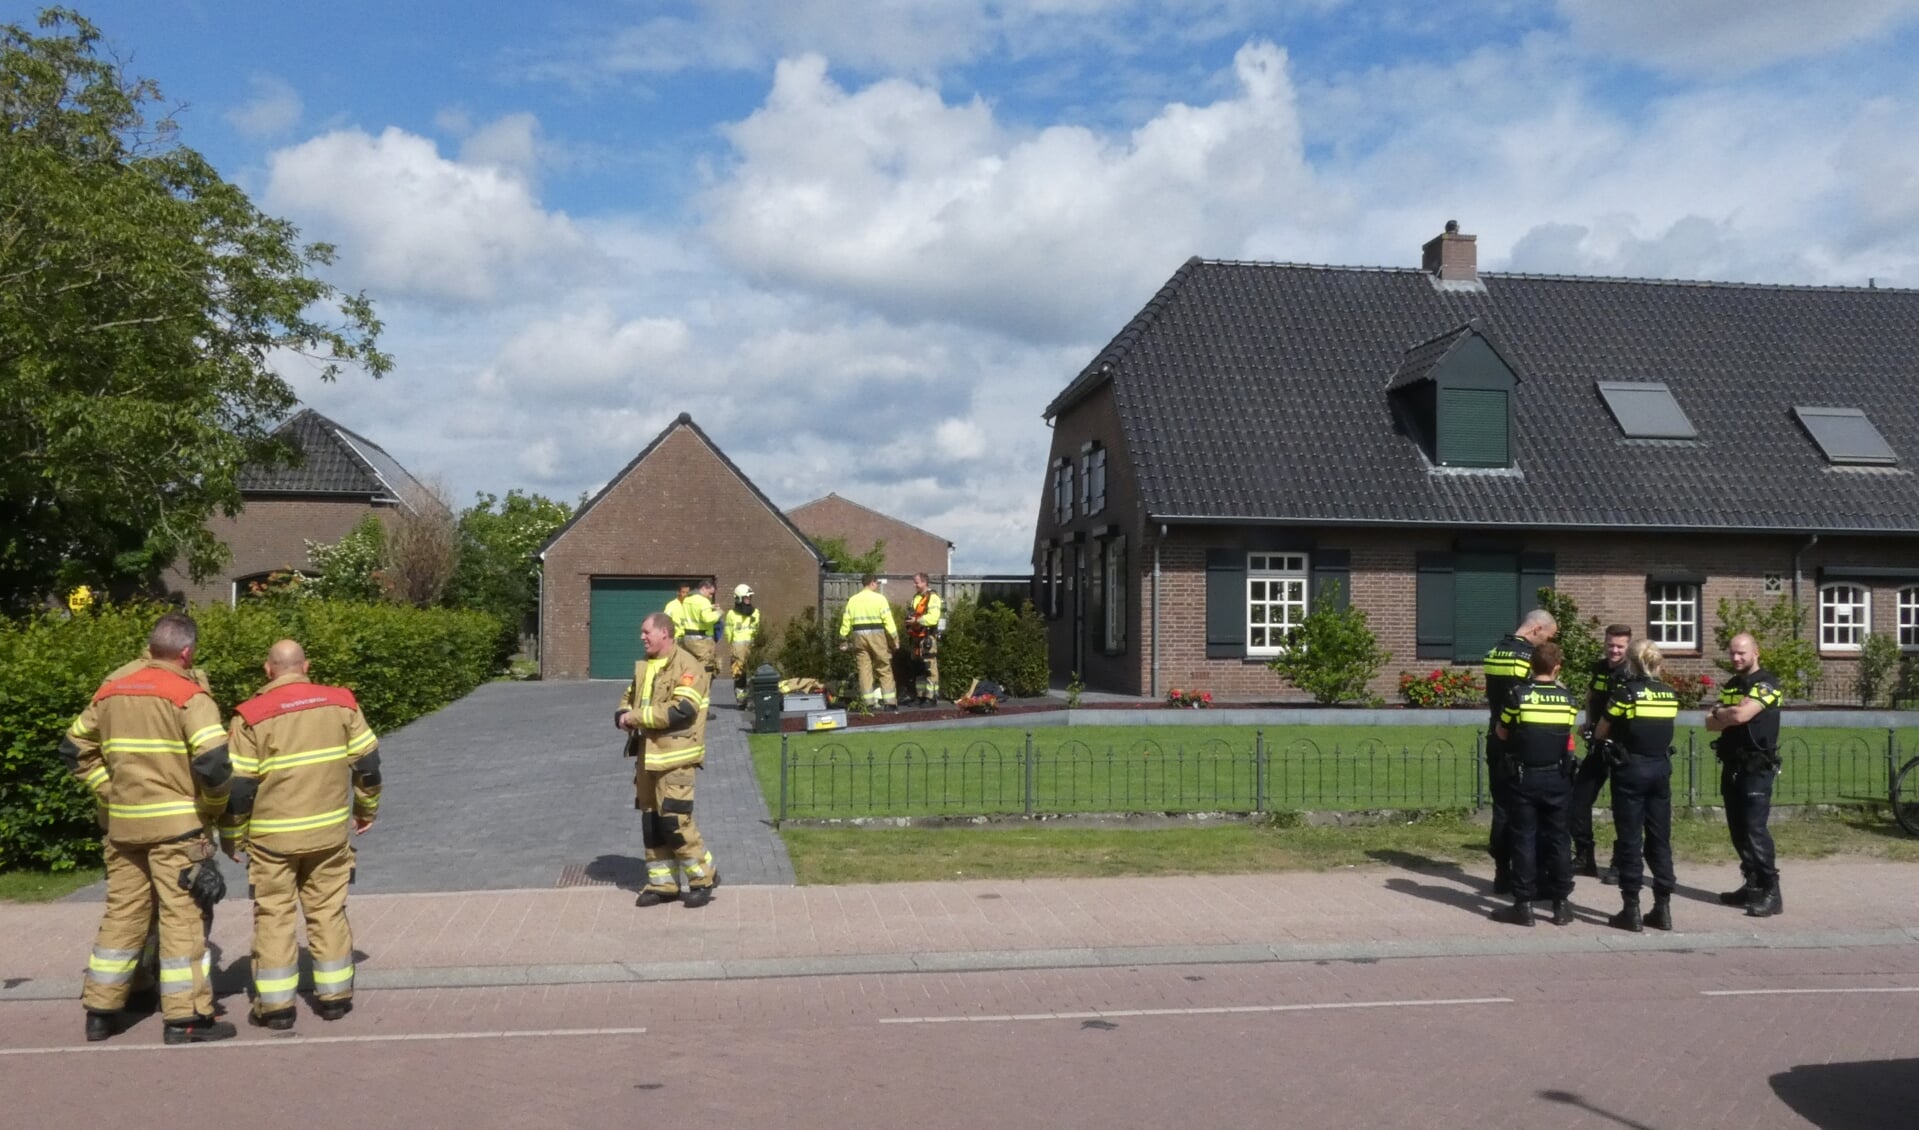 Brandweer blust schoorsteenbrand in Geffen. (Foto: Thomas)